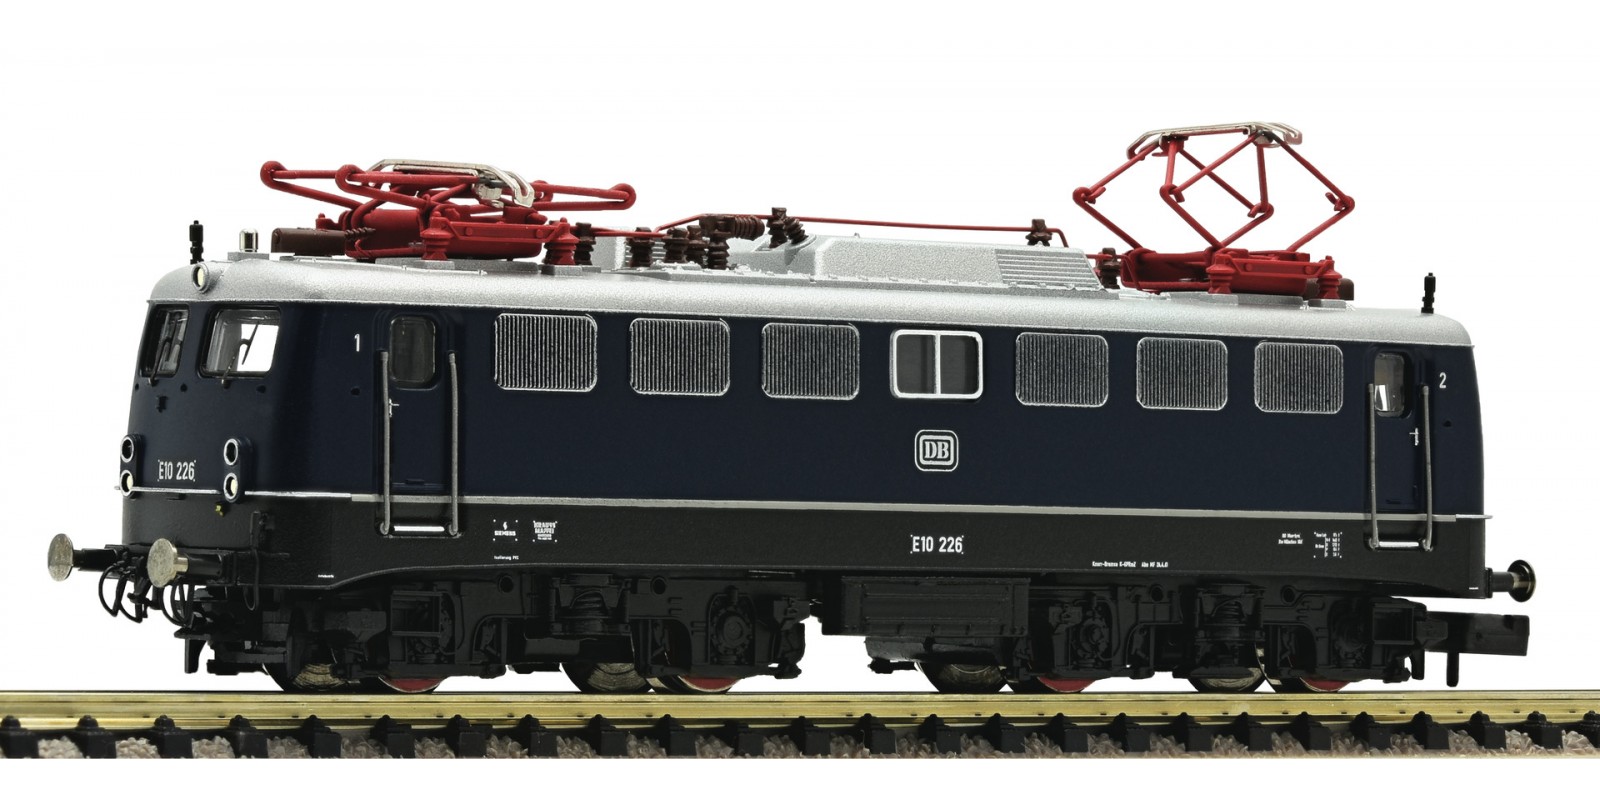 FL733671 - Electric locomotive E 10 225 (BR E 10.2), DB